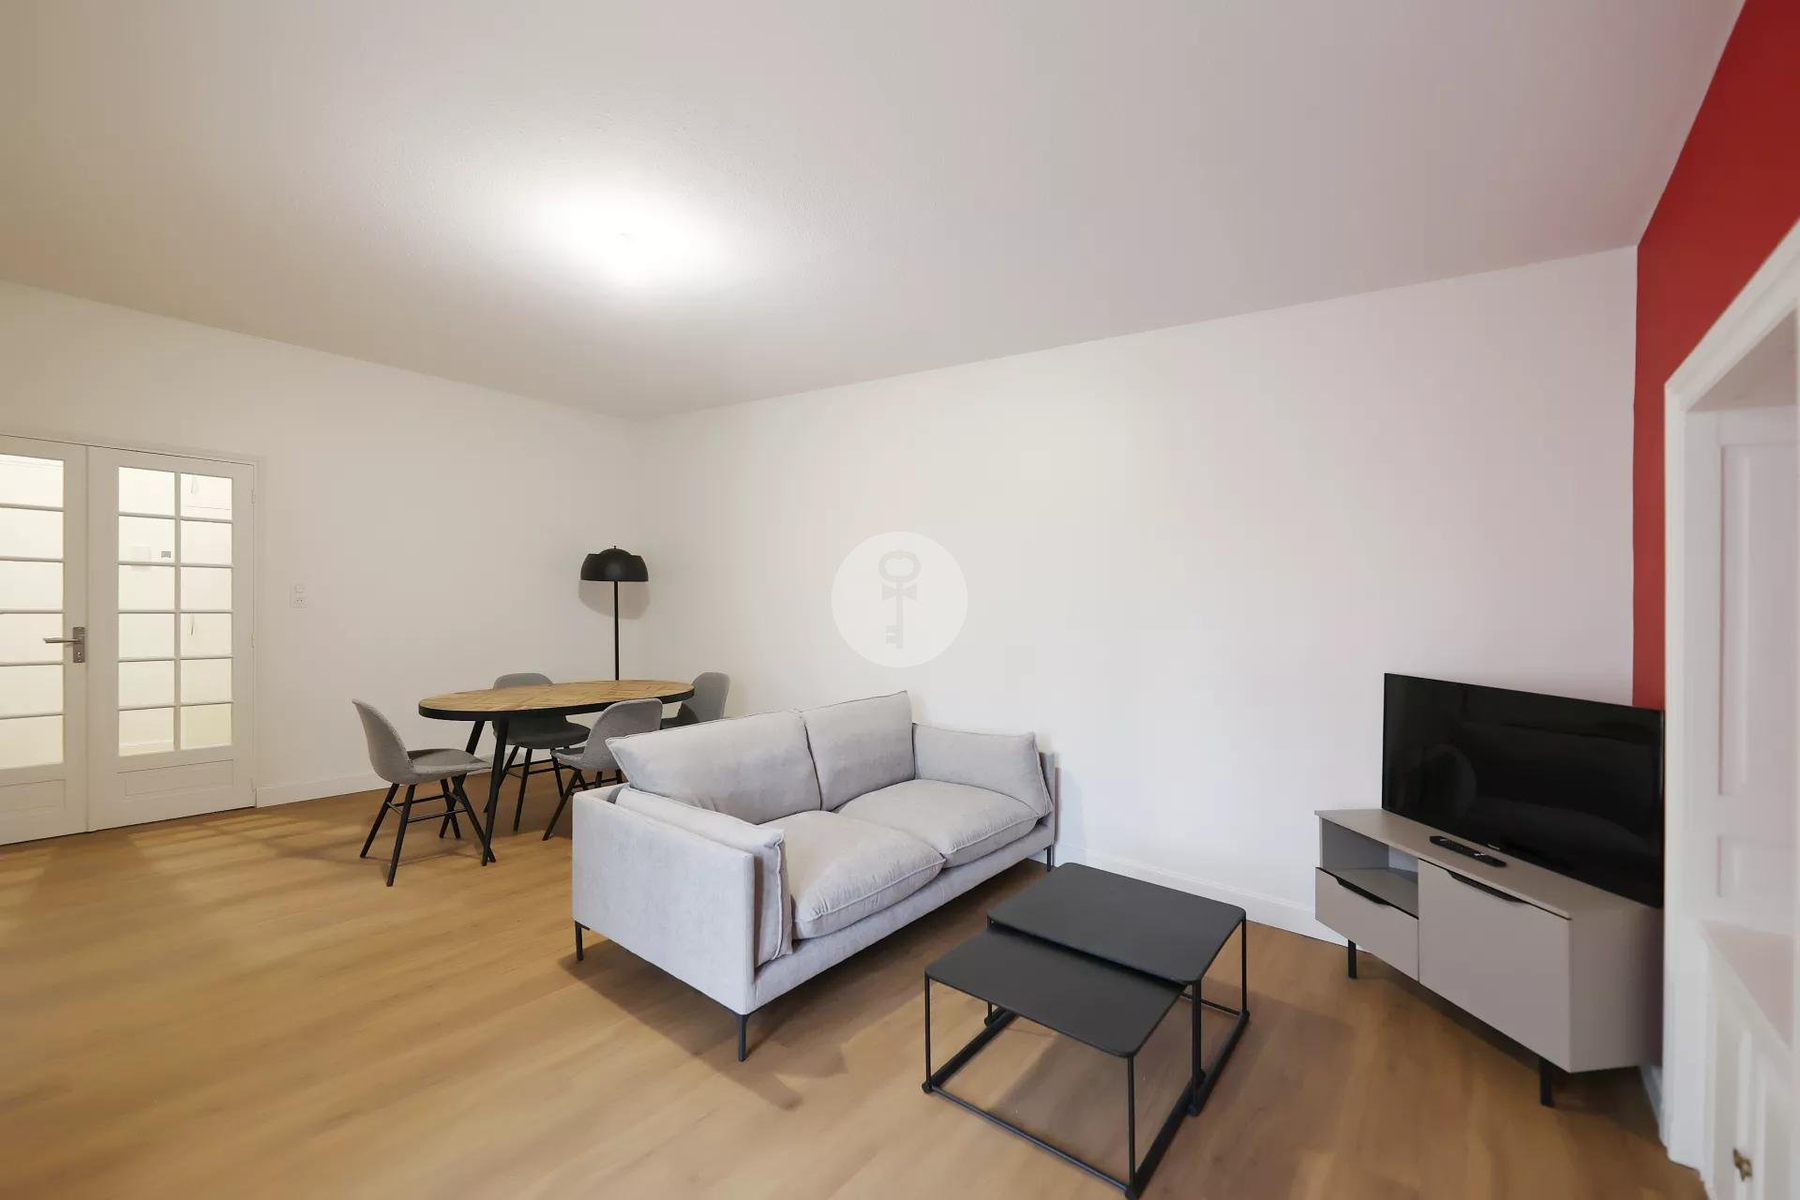 Location appartement meublé 3 pièces 60 m2